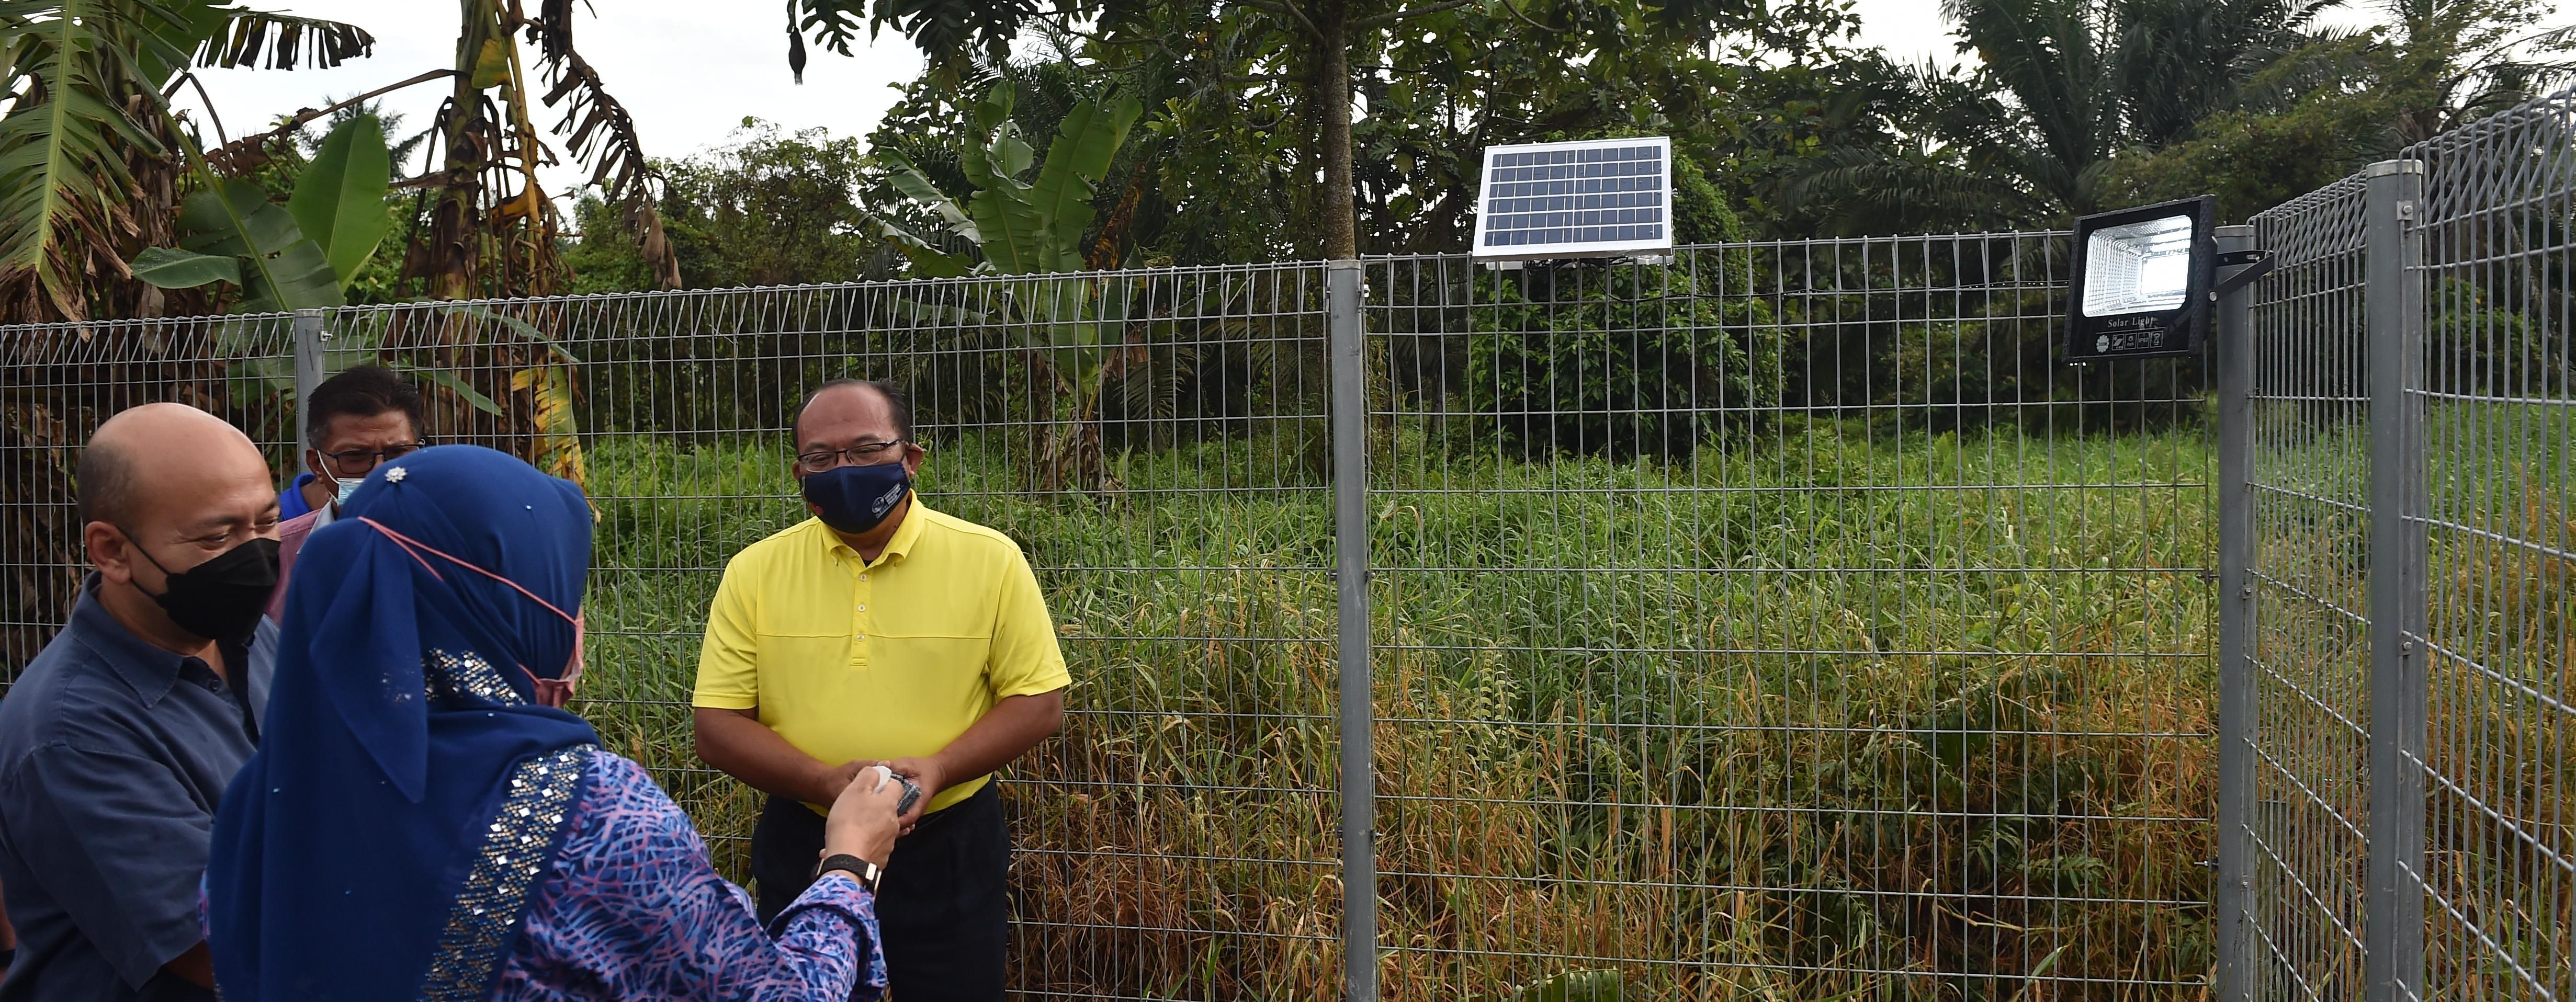 Projek Gotong-Royong Pemasangan Lampu Solar oleh UniMAP